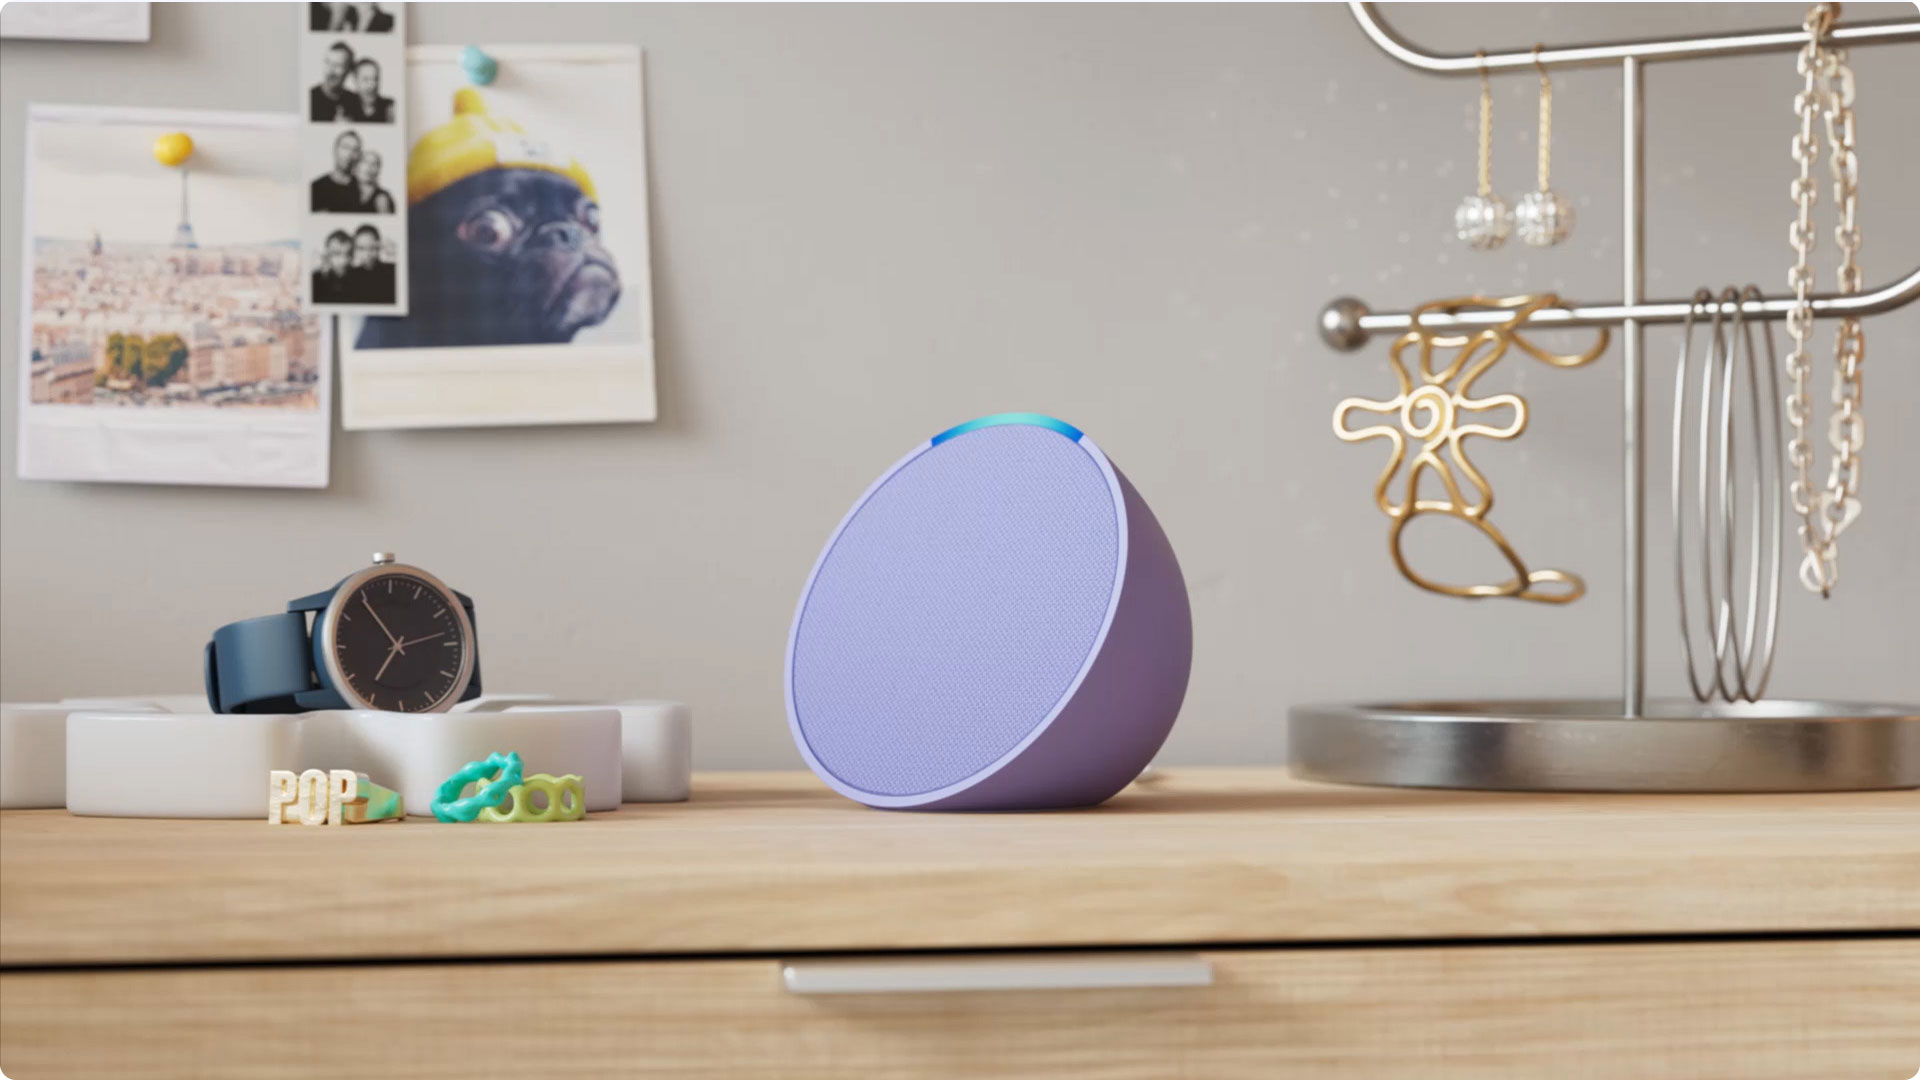 An Amazon Echo Pop smart speaker on a dresser